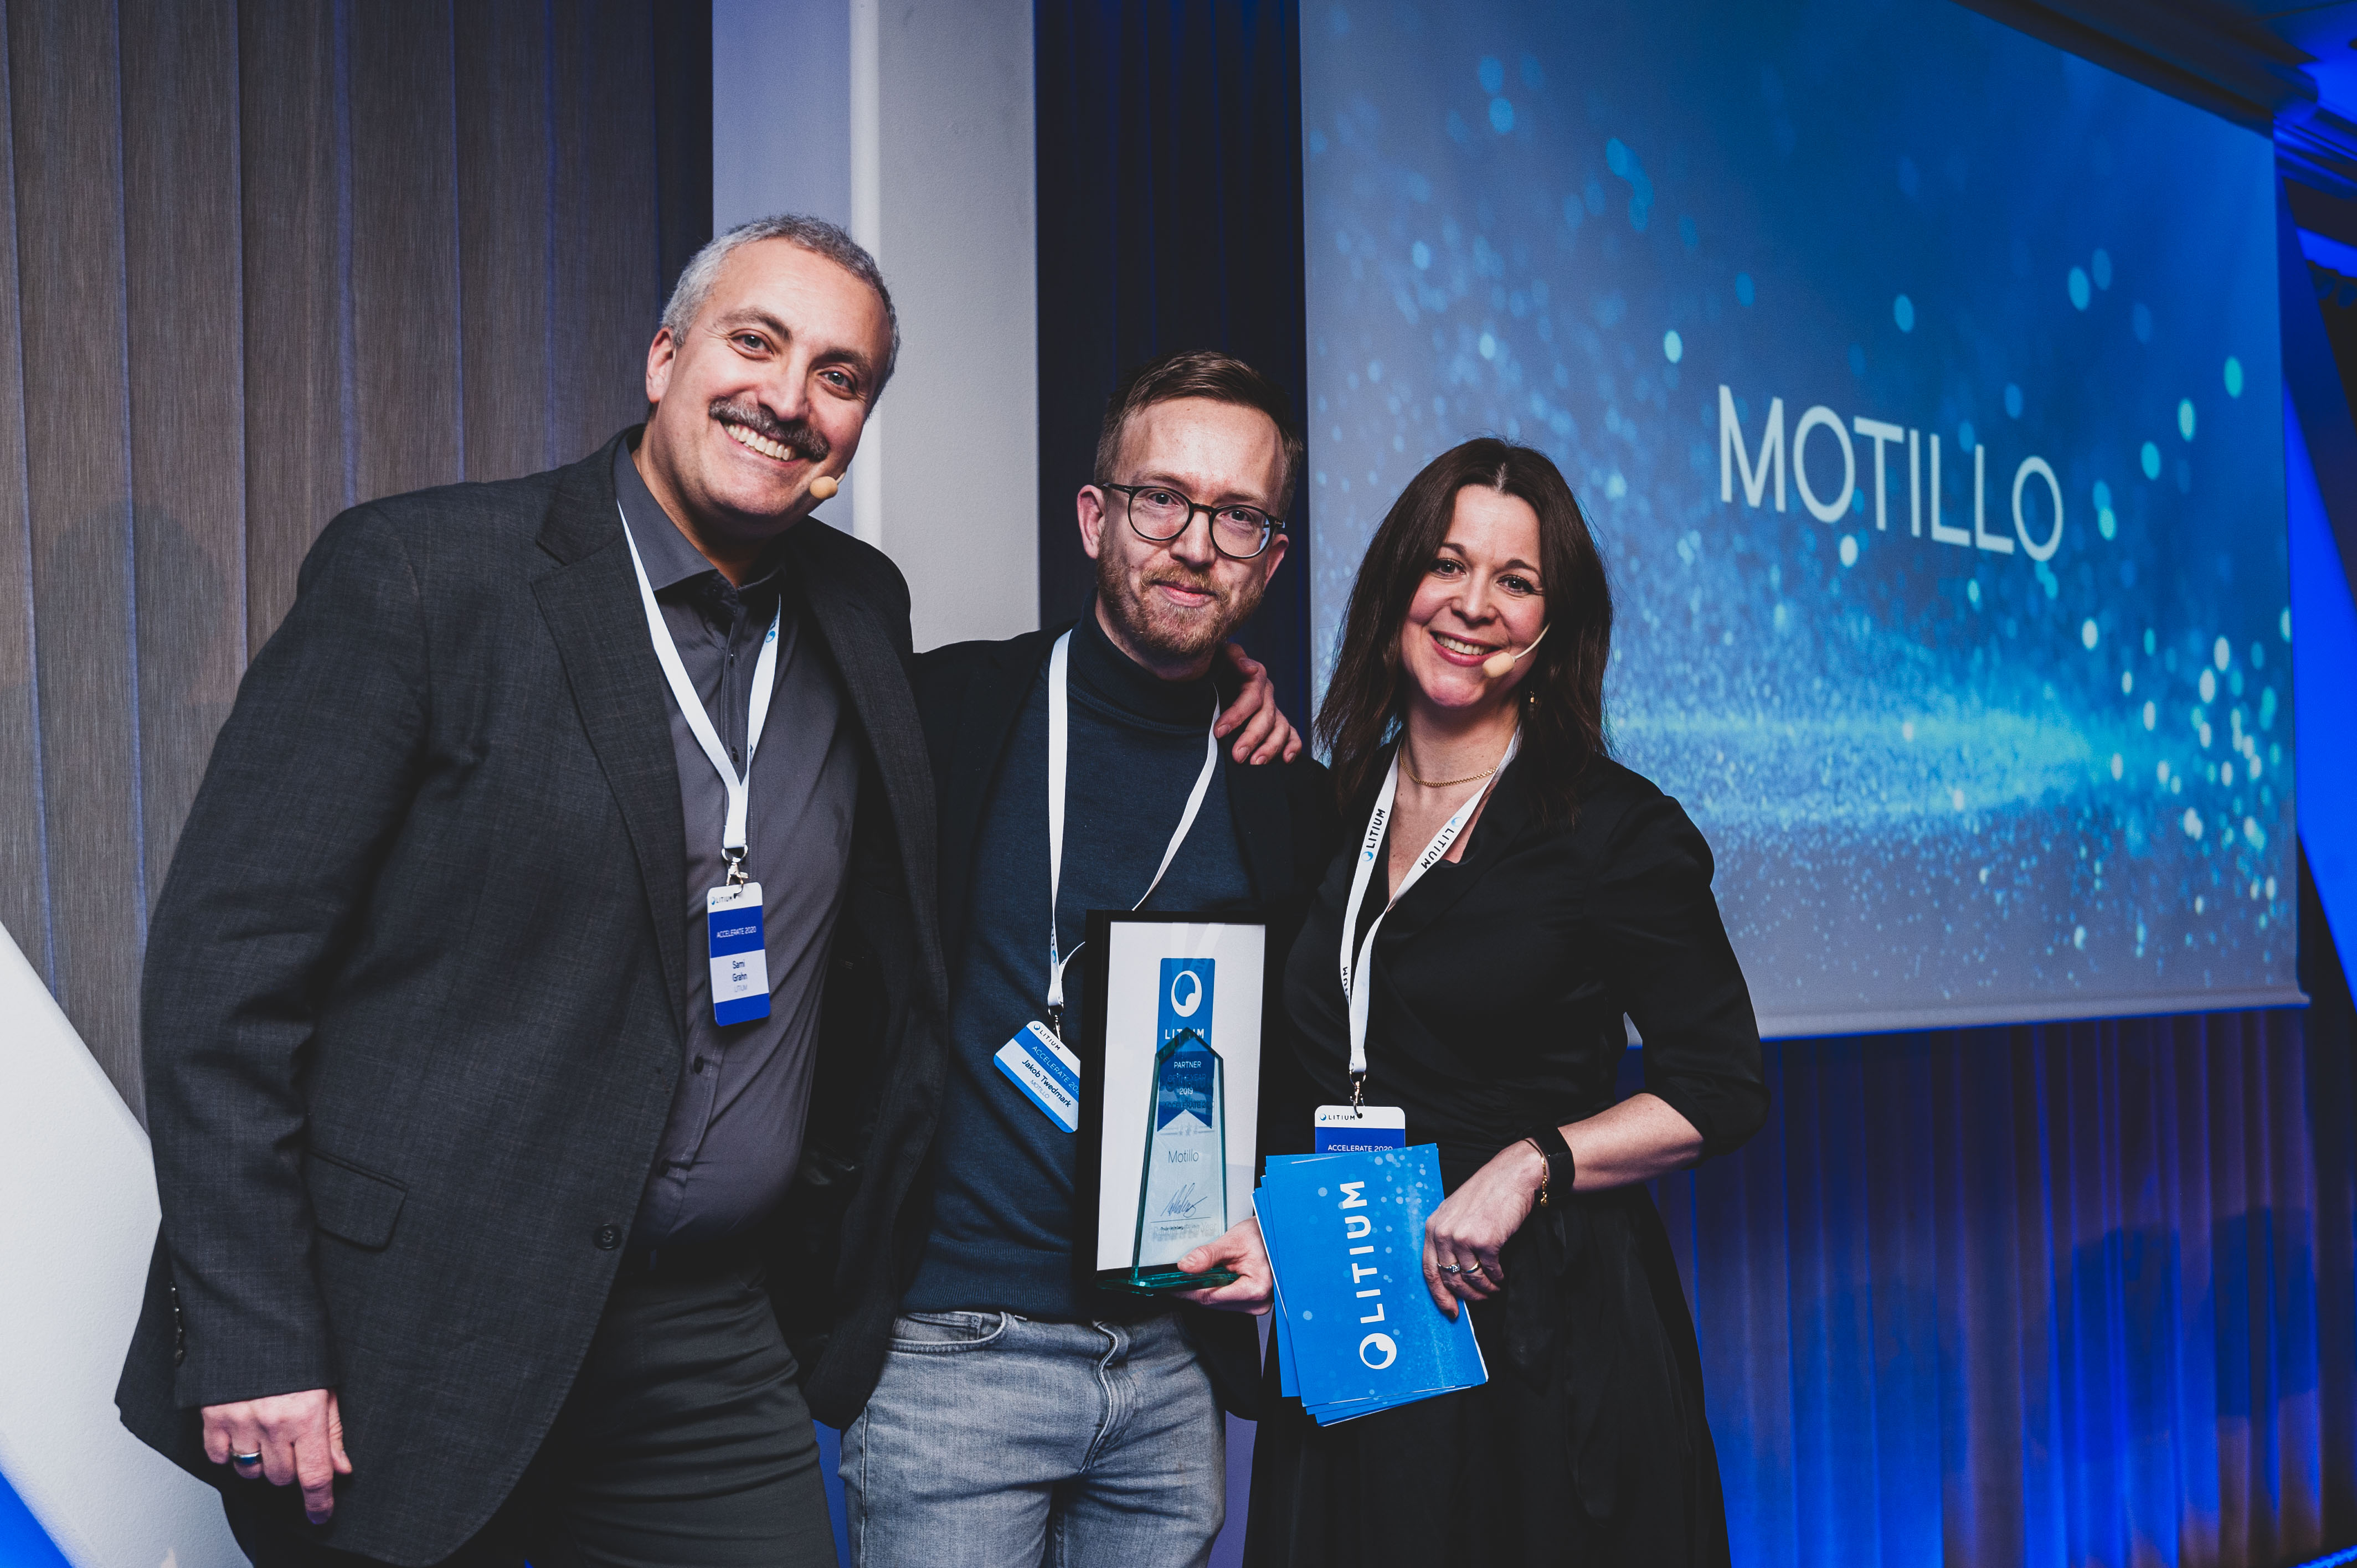 Motillo utses till Litiums Partner of the Year